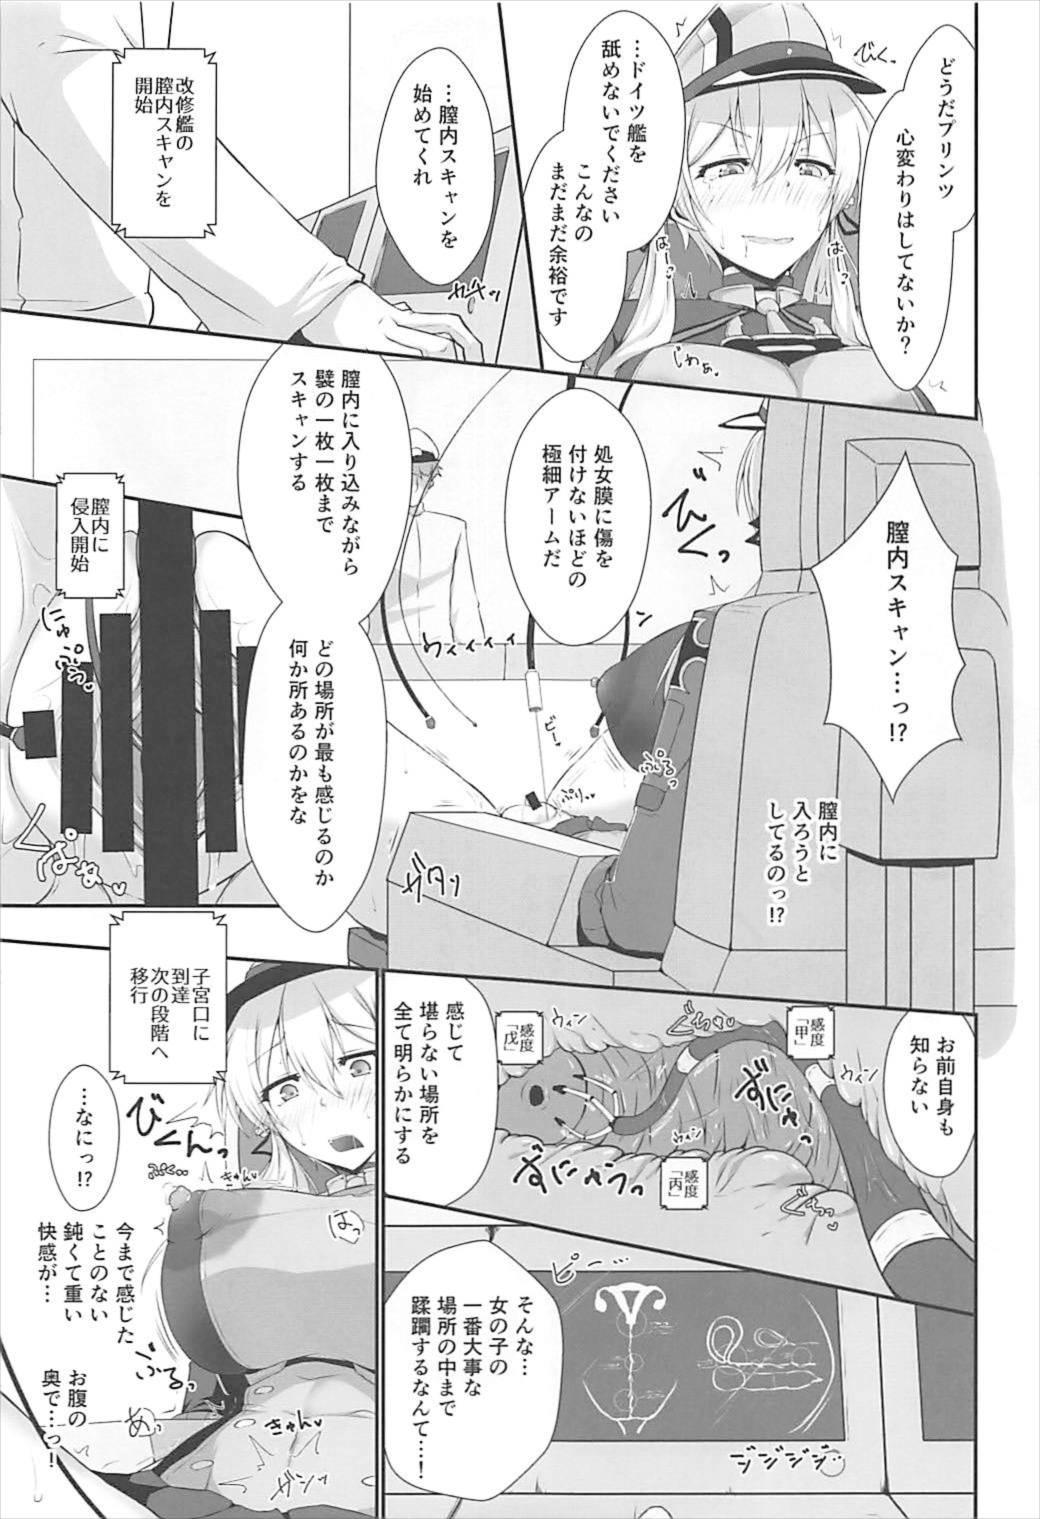 Slapping Doitsukan wa Kikaikan ni Kussuru Hazu ga Nain dakara! - Kantai collection Suckingdick - Page 9